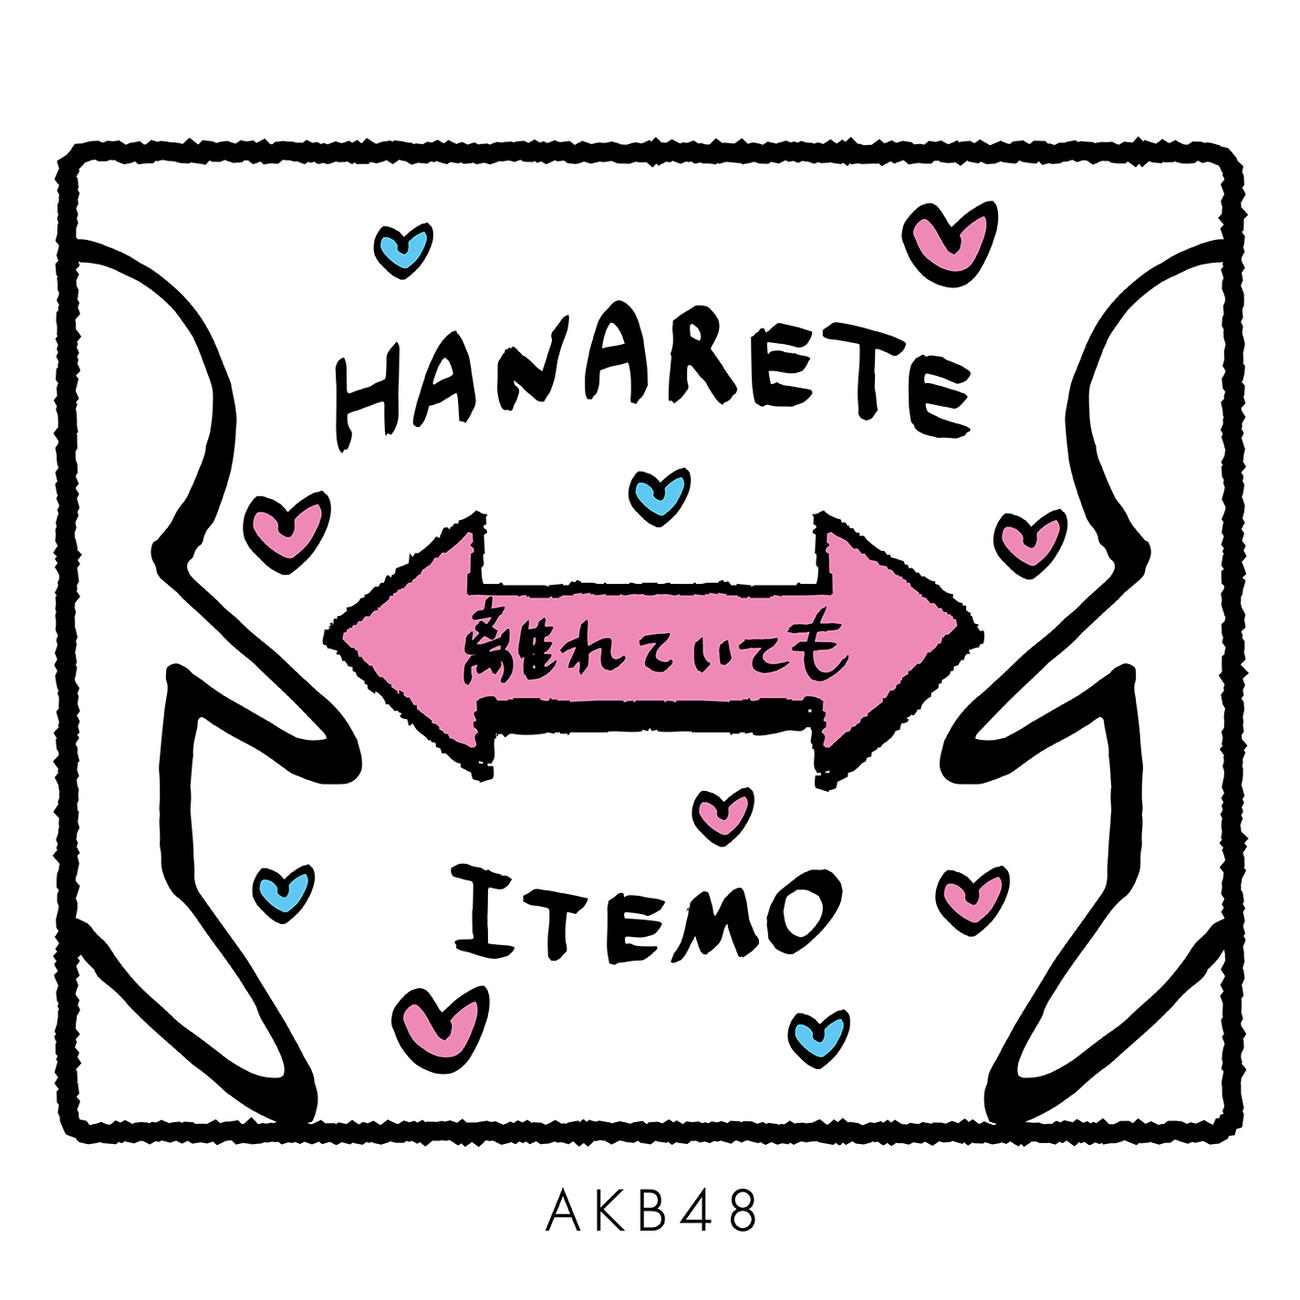 AKB48のメッセージソング「離れていても」のジャケット写真